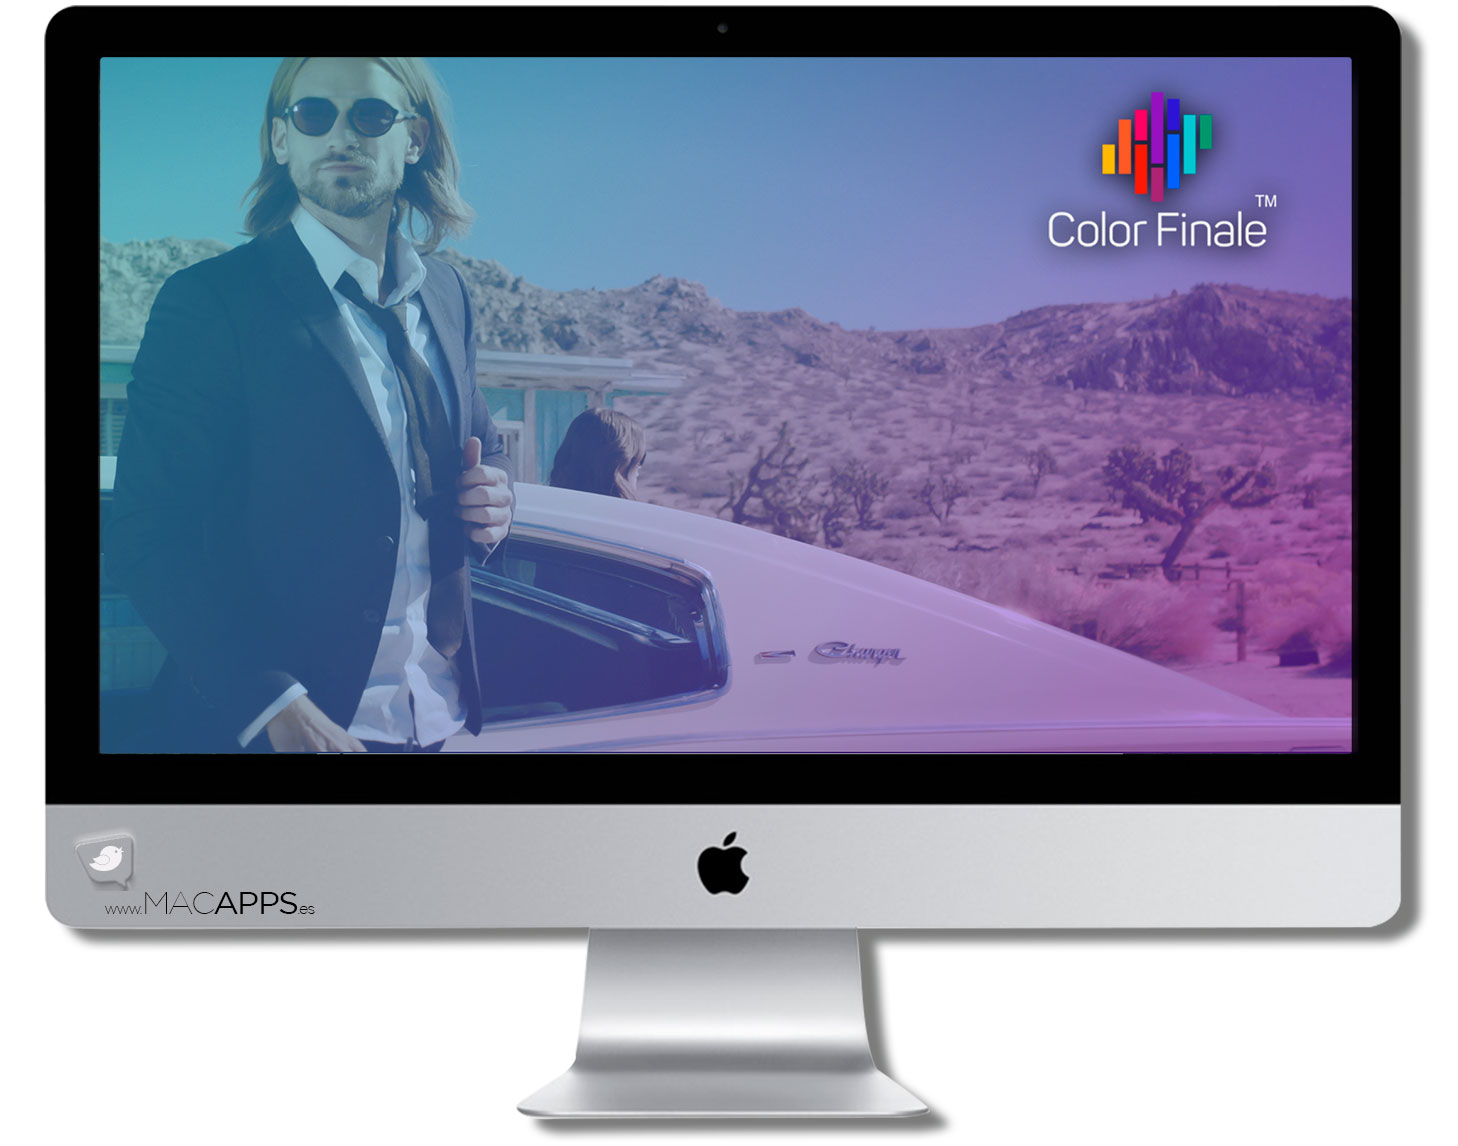 Color finale color finale for mac free